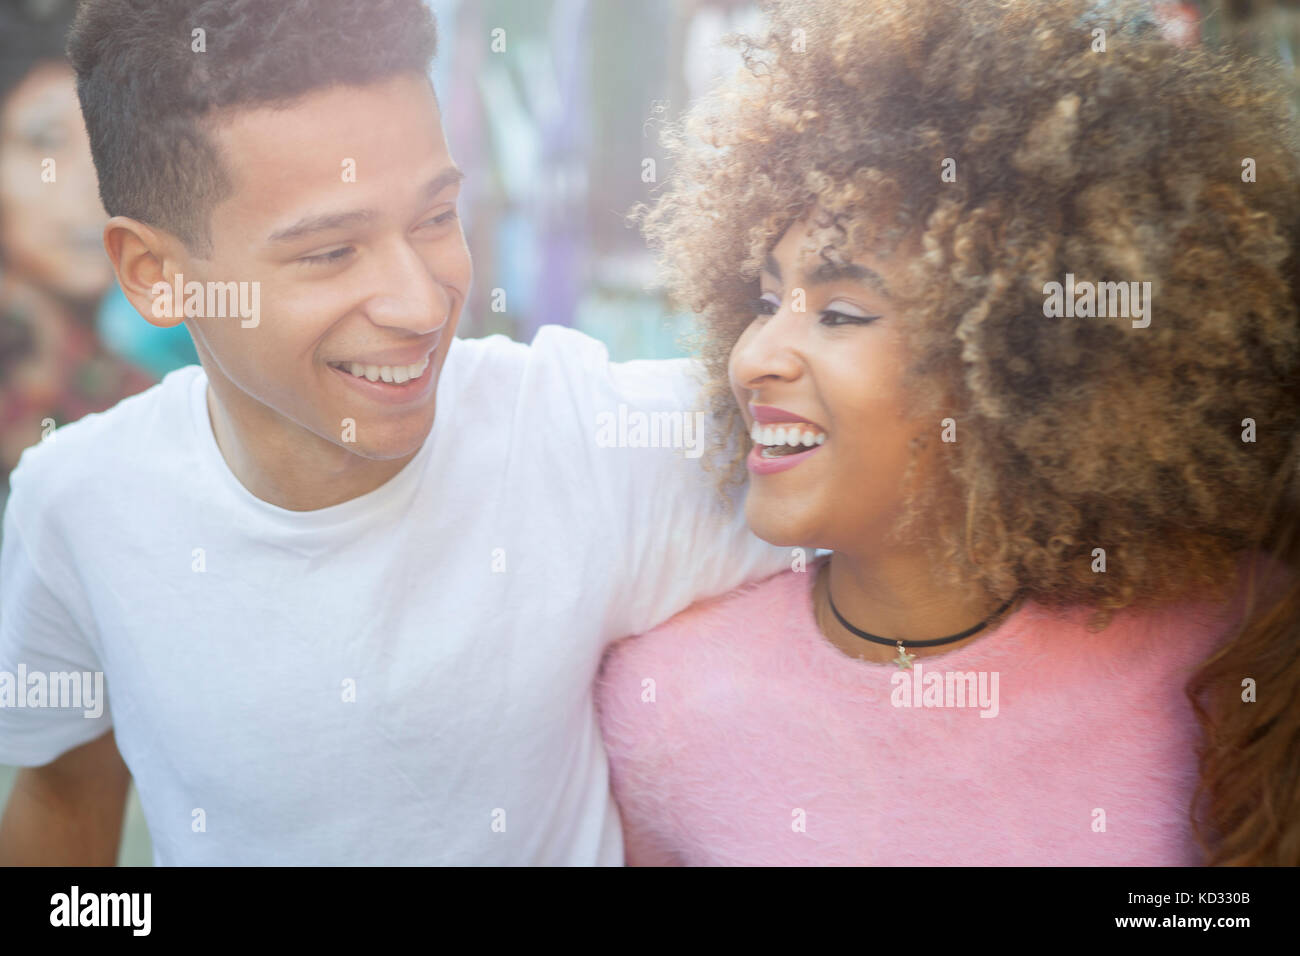 Jeune couple dans la rue, face à face, laughing Banque D'Images